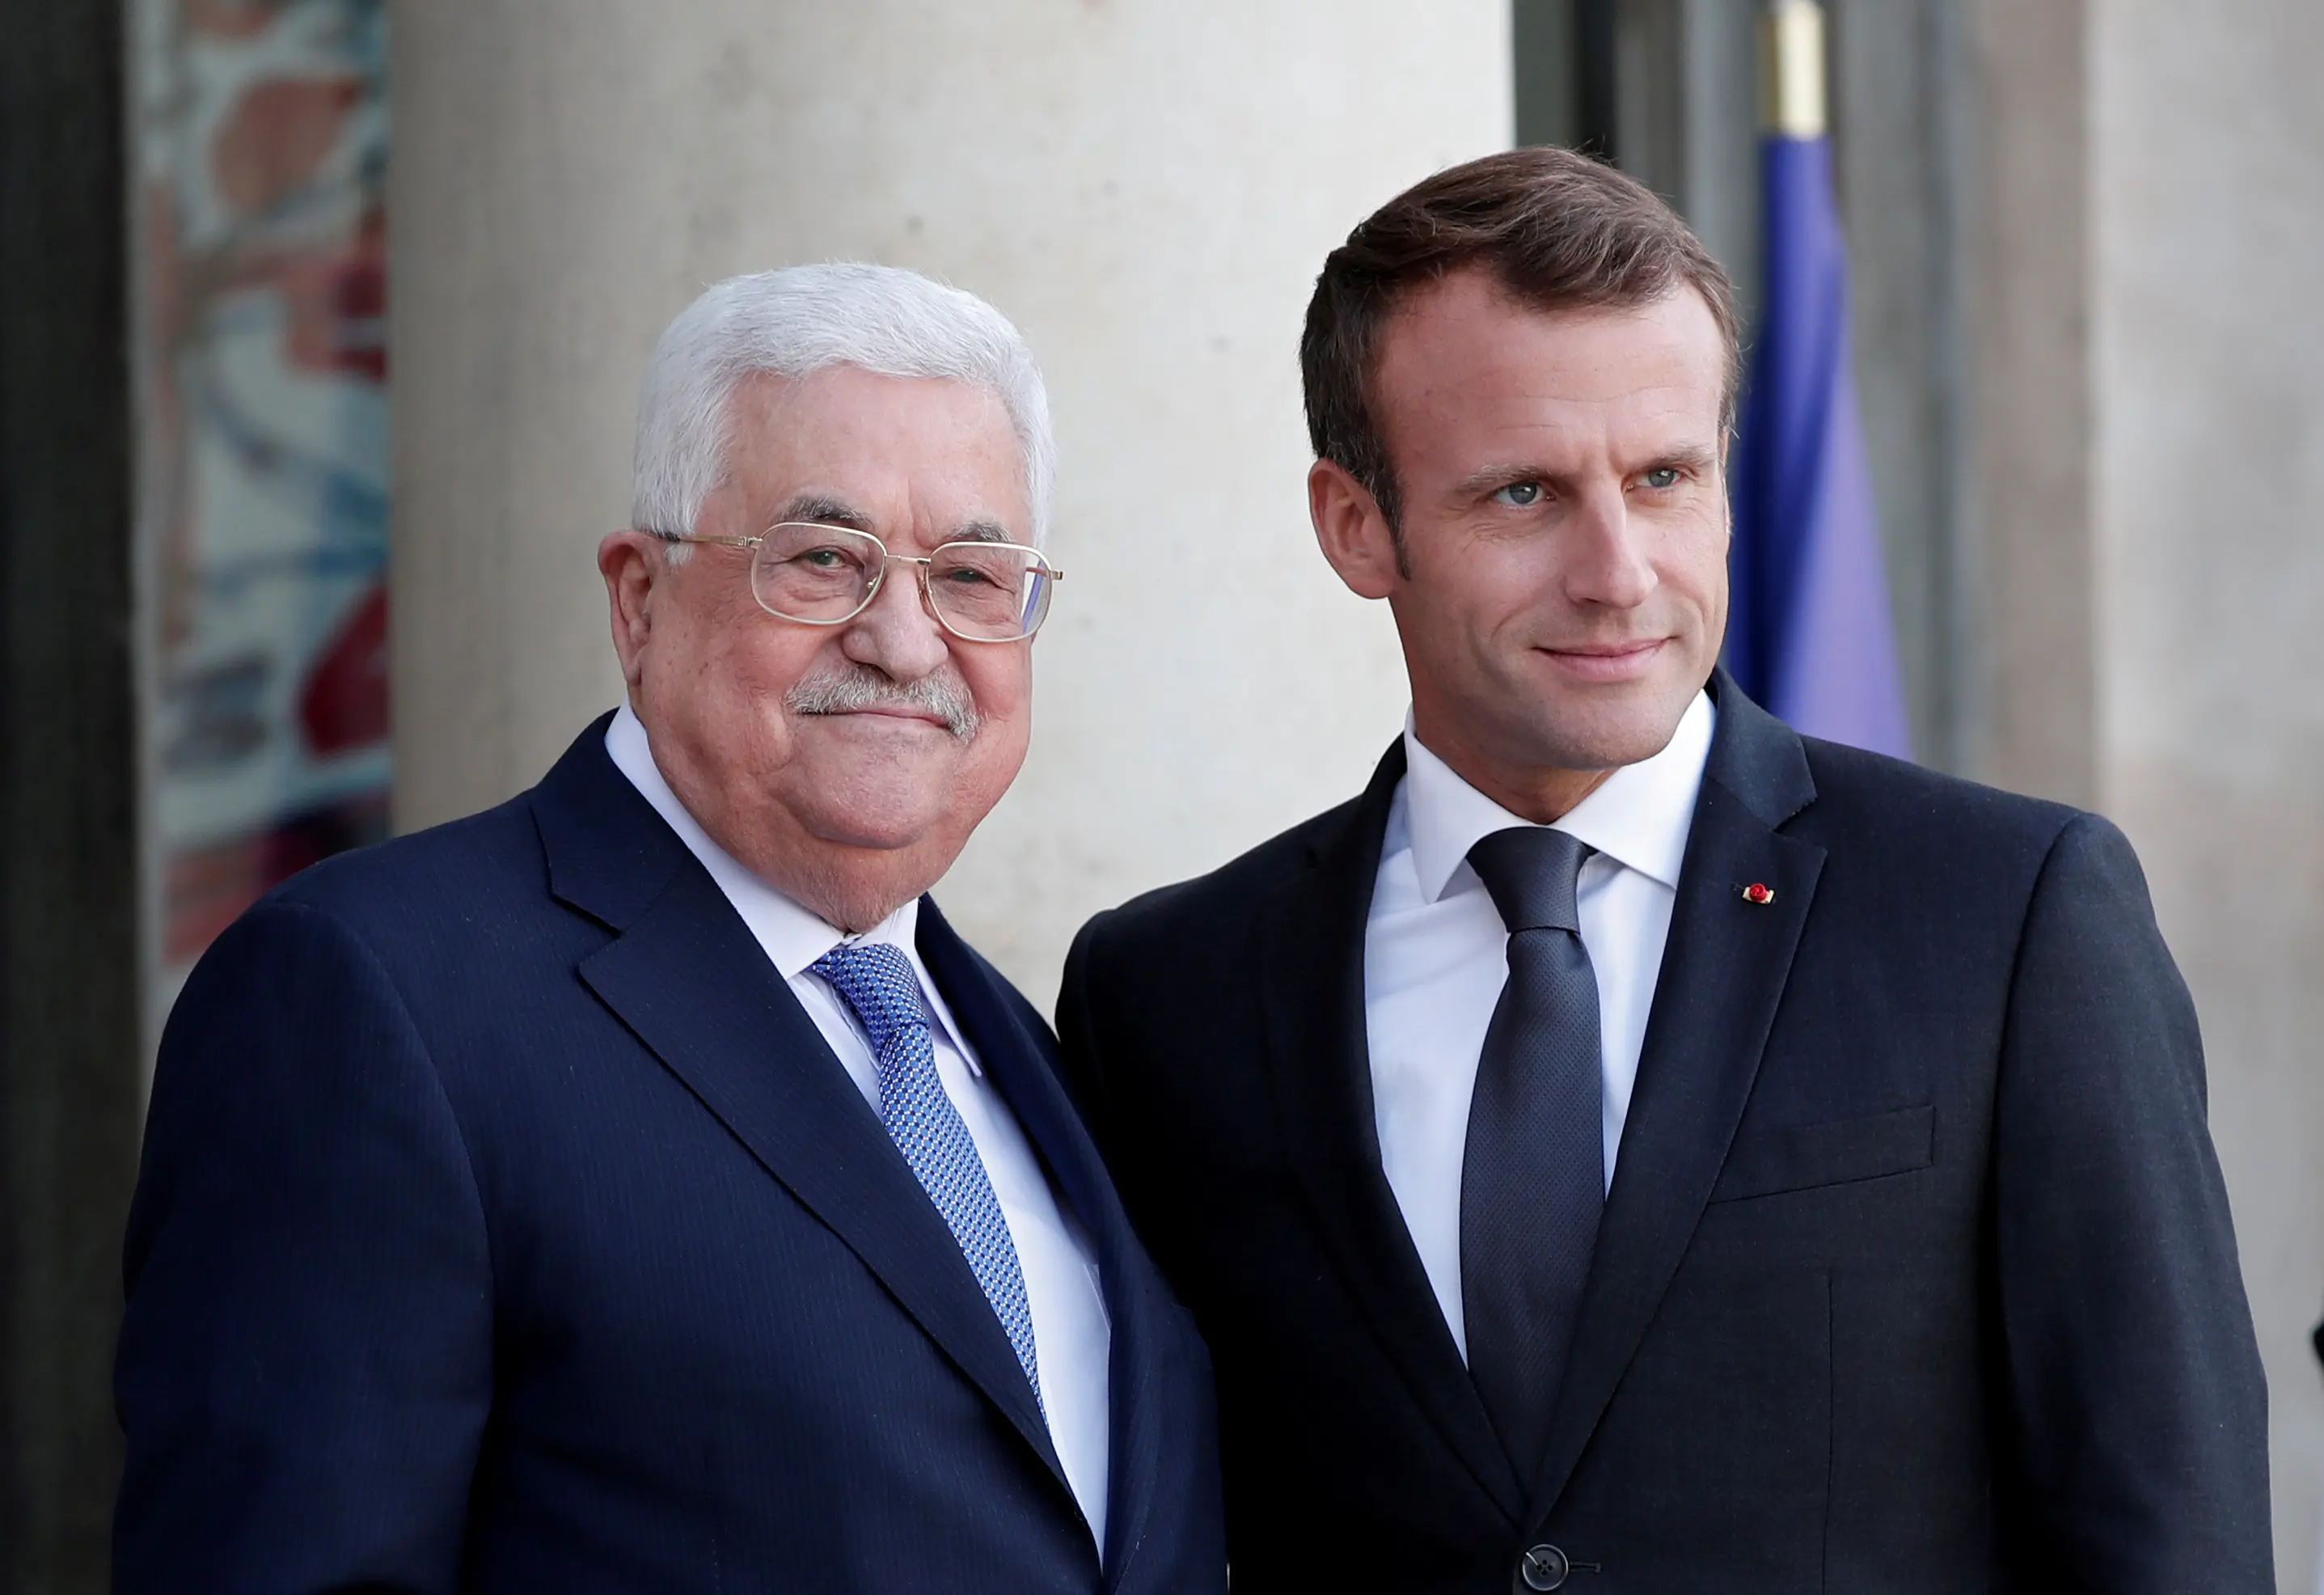 יו"ר הרשות הפלסטינית אבו מאזן עם נשיא צרפת עמנואל מקרון בפריז 21 ספטמבר 2018